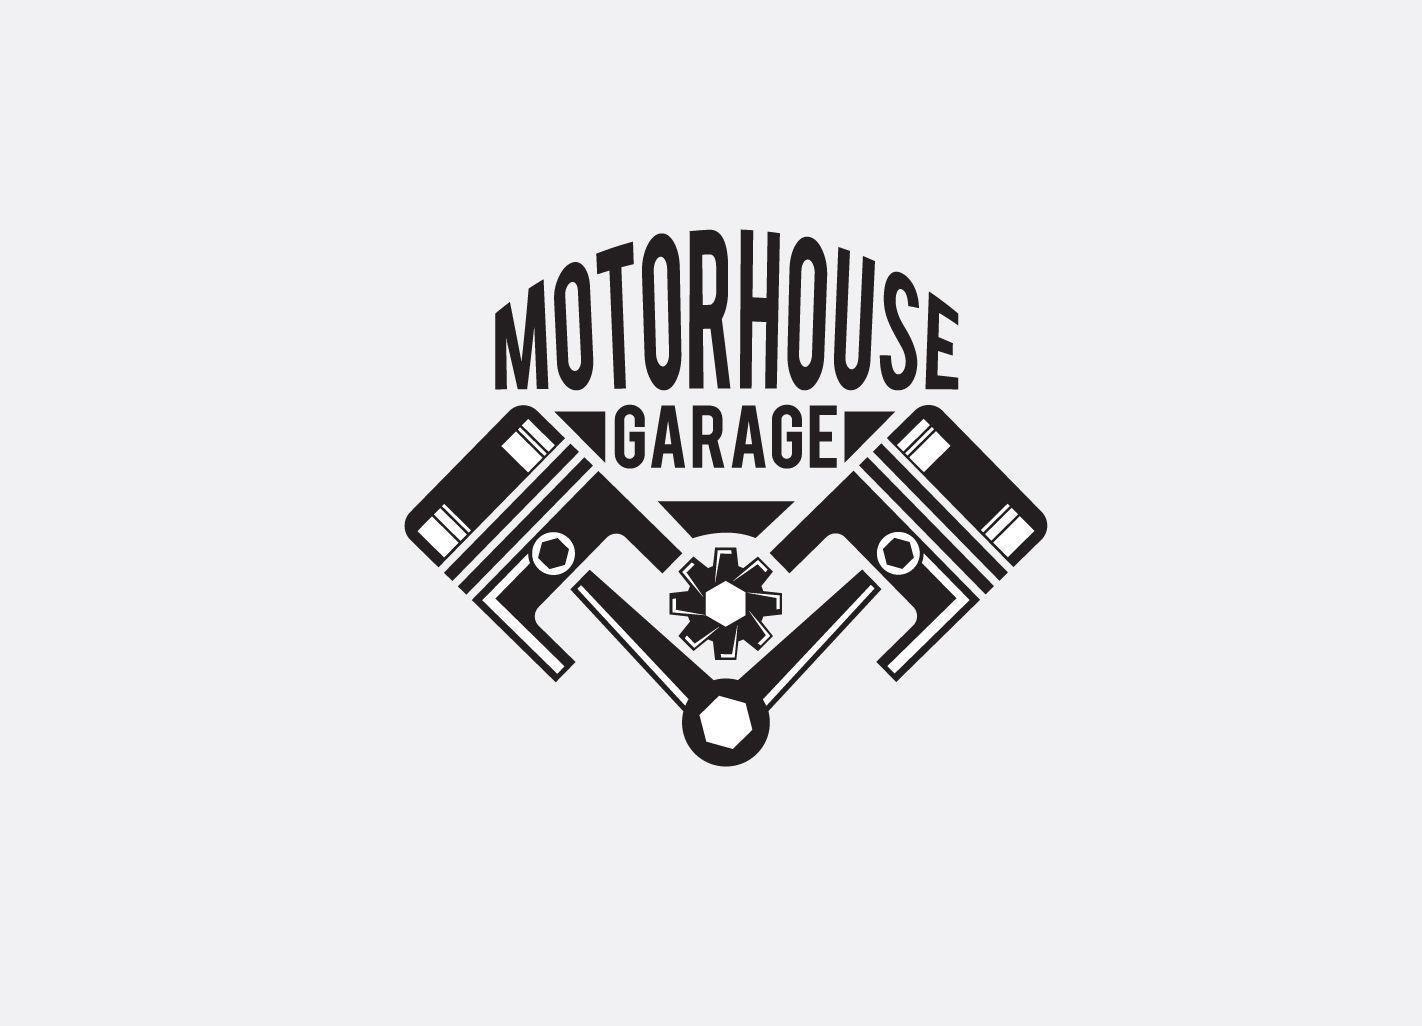 Automotive Garage Logo - Upmarket, Bold, Automotive Logo Design for Motorhouse garage